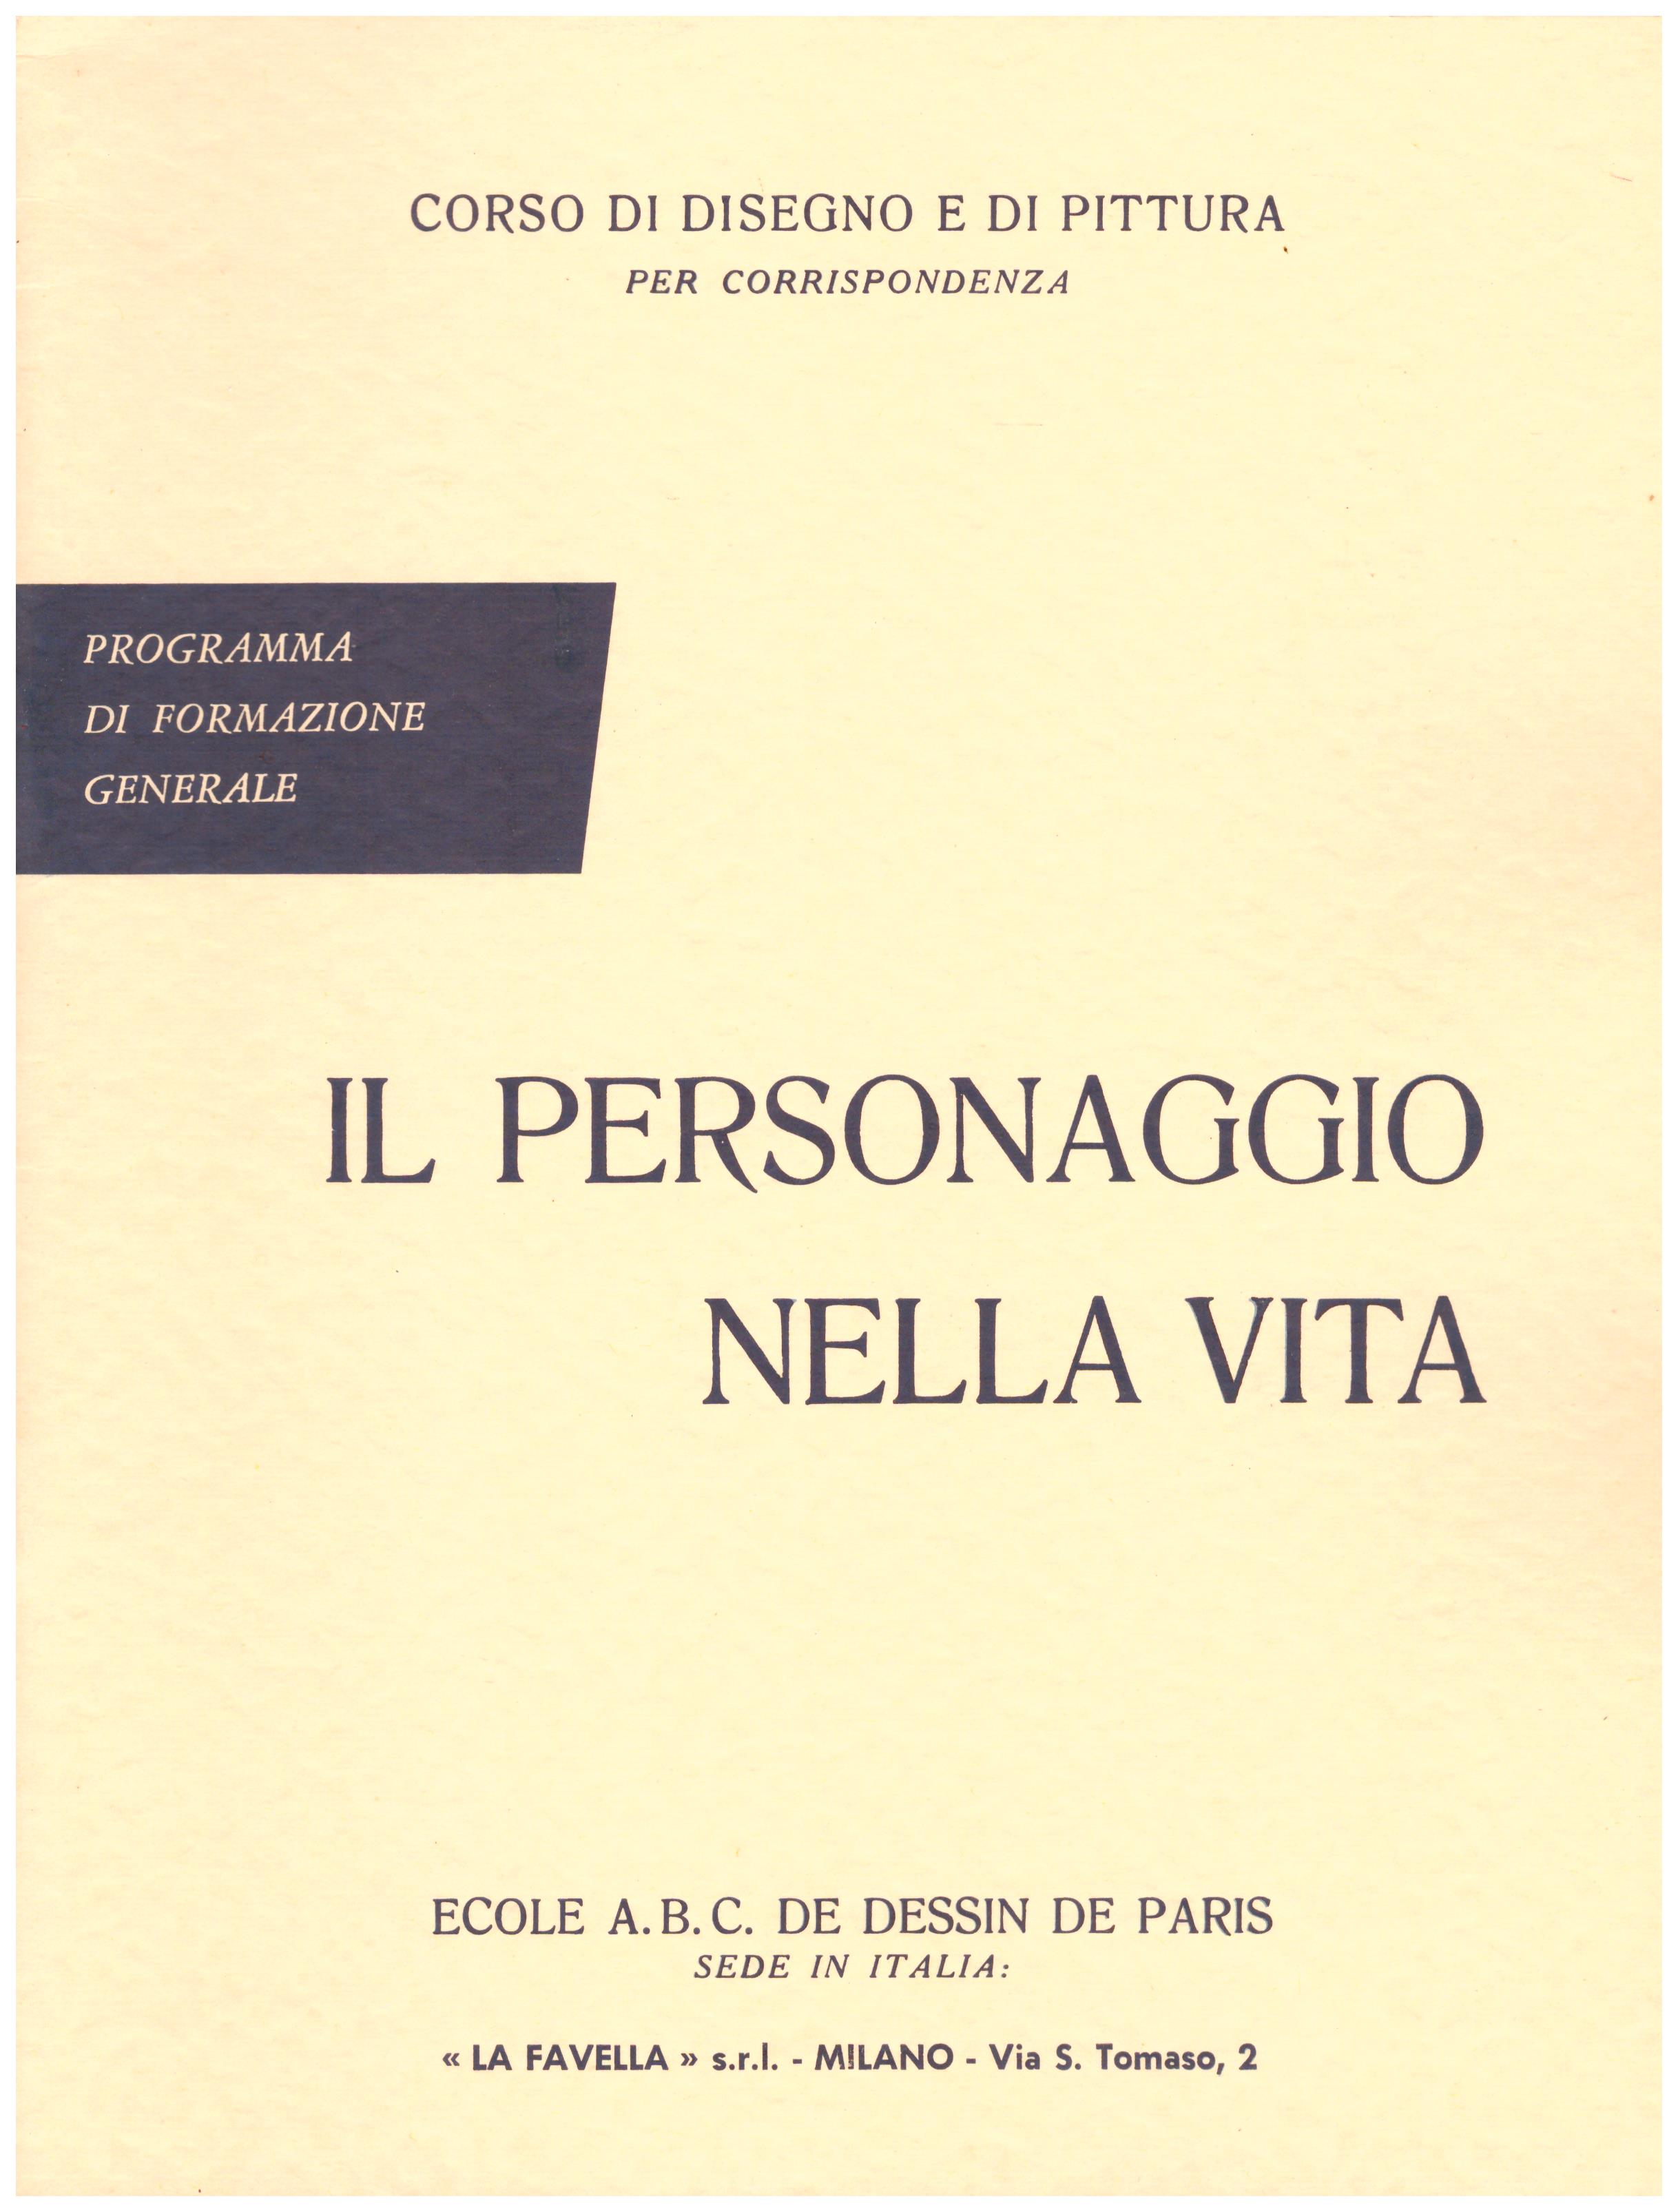 Titolo: Corso di disegno e pittura, il personaggio nella vita  Autore: AA.VV.  Editore: Ecole A.B.C. de dessin de Paris sede in Italia: La Favella, Milano 1962